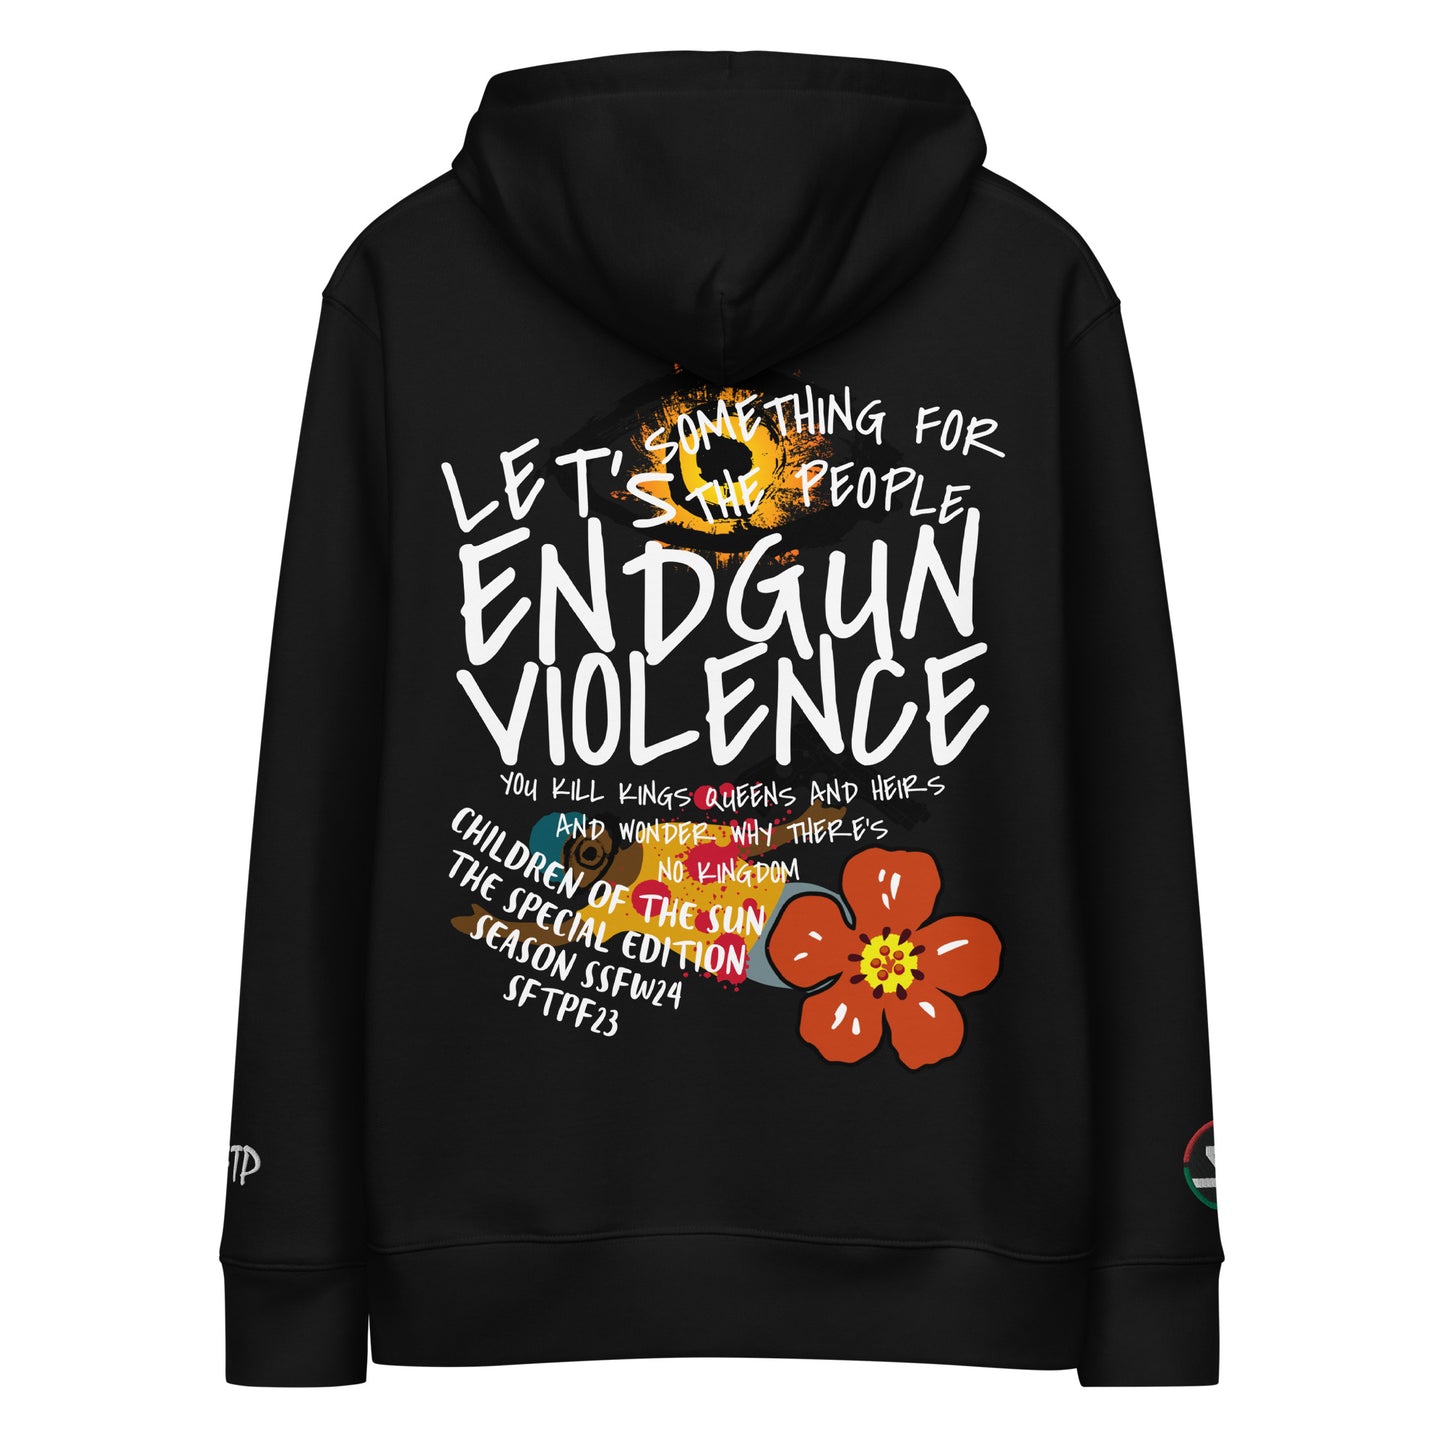 Let’s End Gun Violence II Eco Hoodie